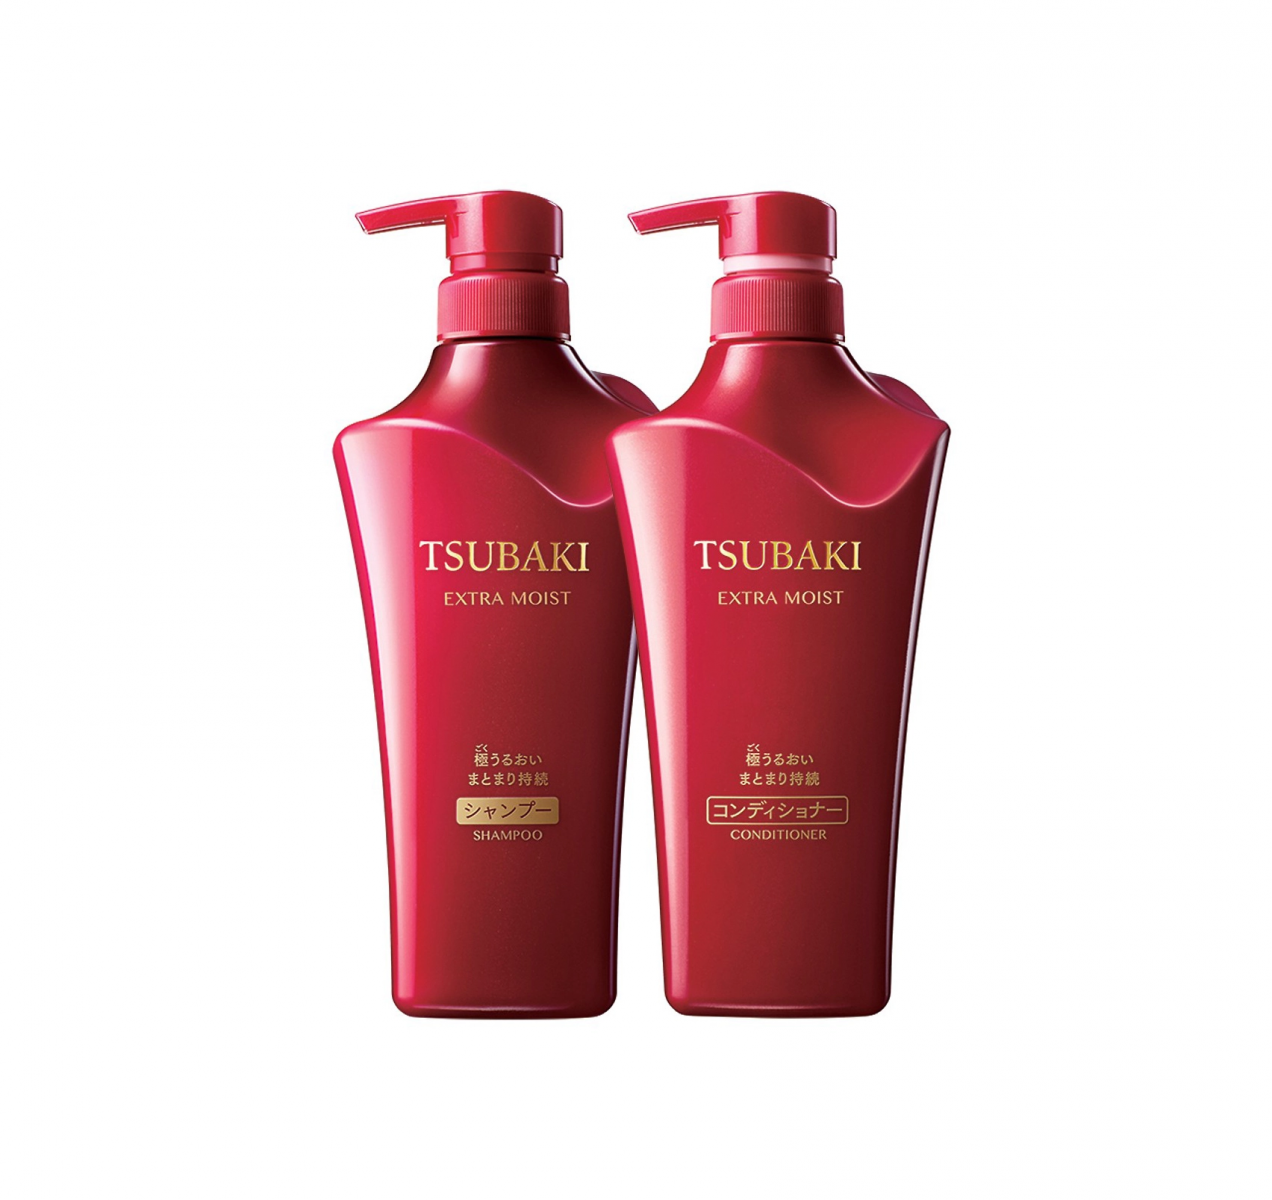 Bộ dầu gội xả Shiseido Tsubaki màu đỏ của Nhật Bản